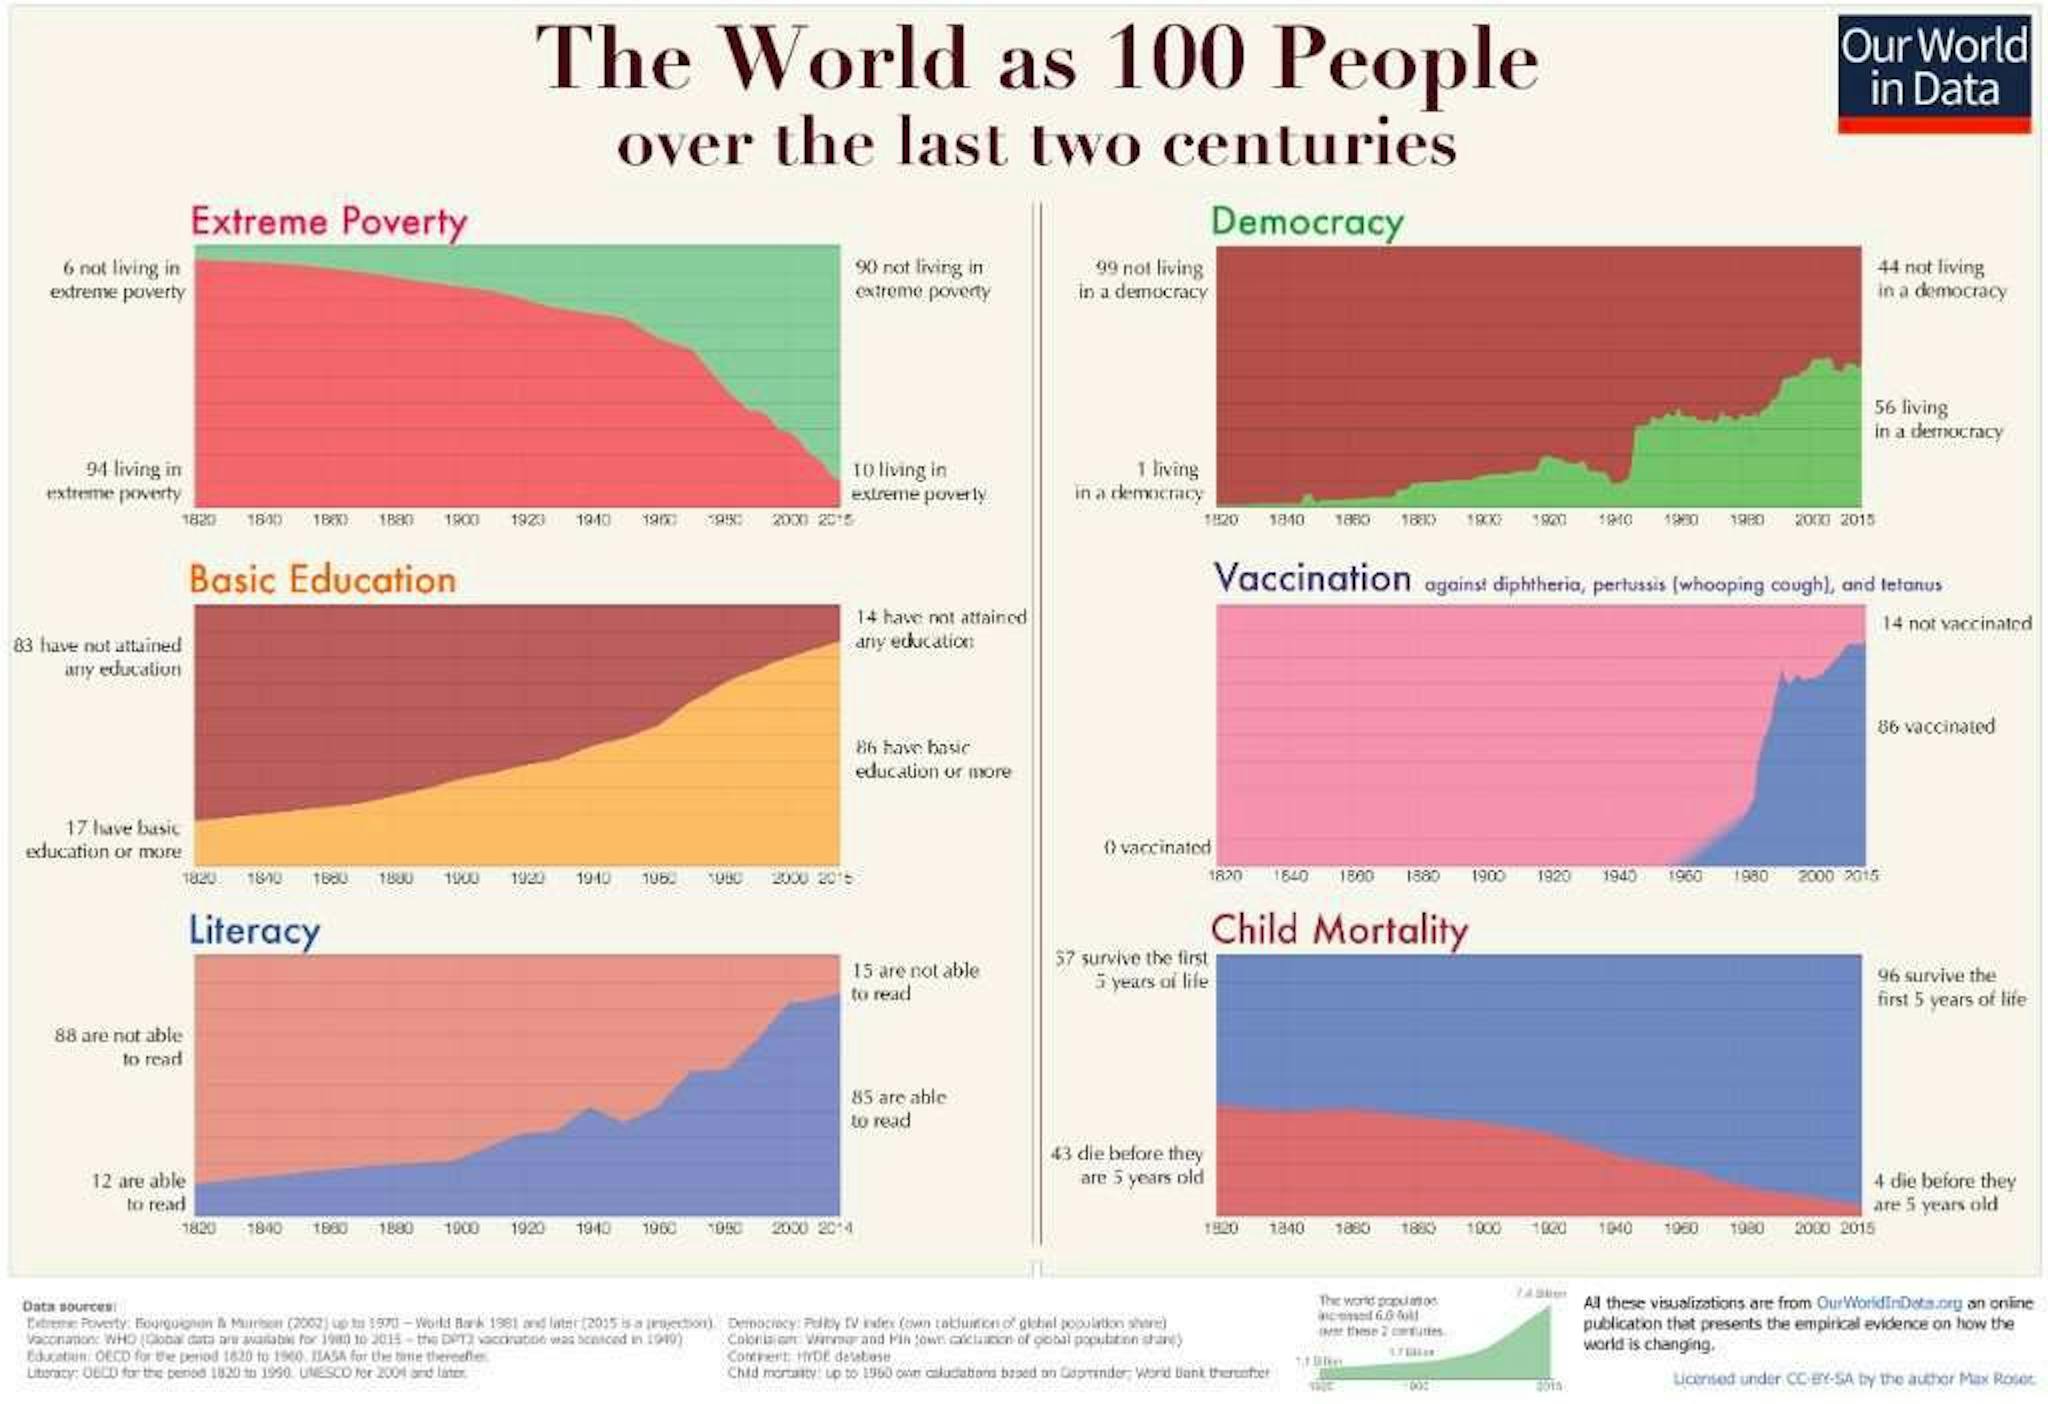 Le monde en tant que 100 personnes au cours des deux derniers siècles — Notre monde en données